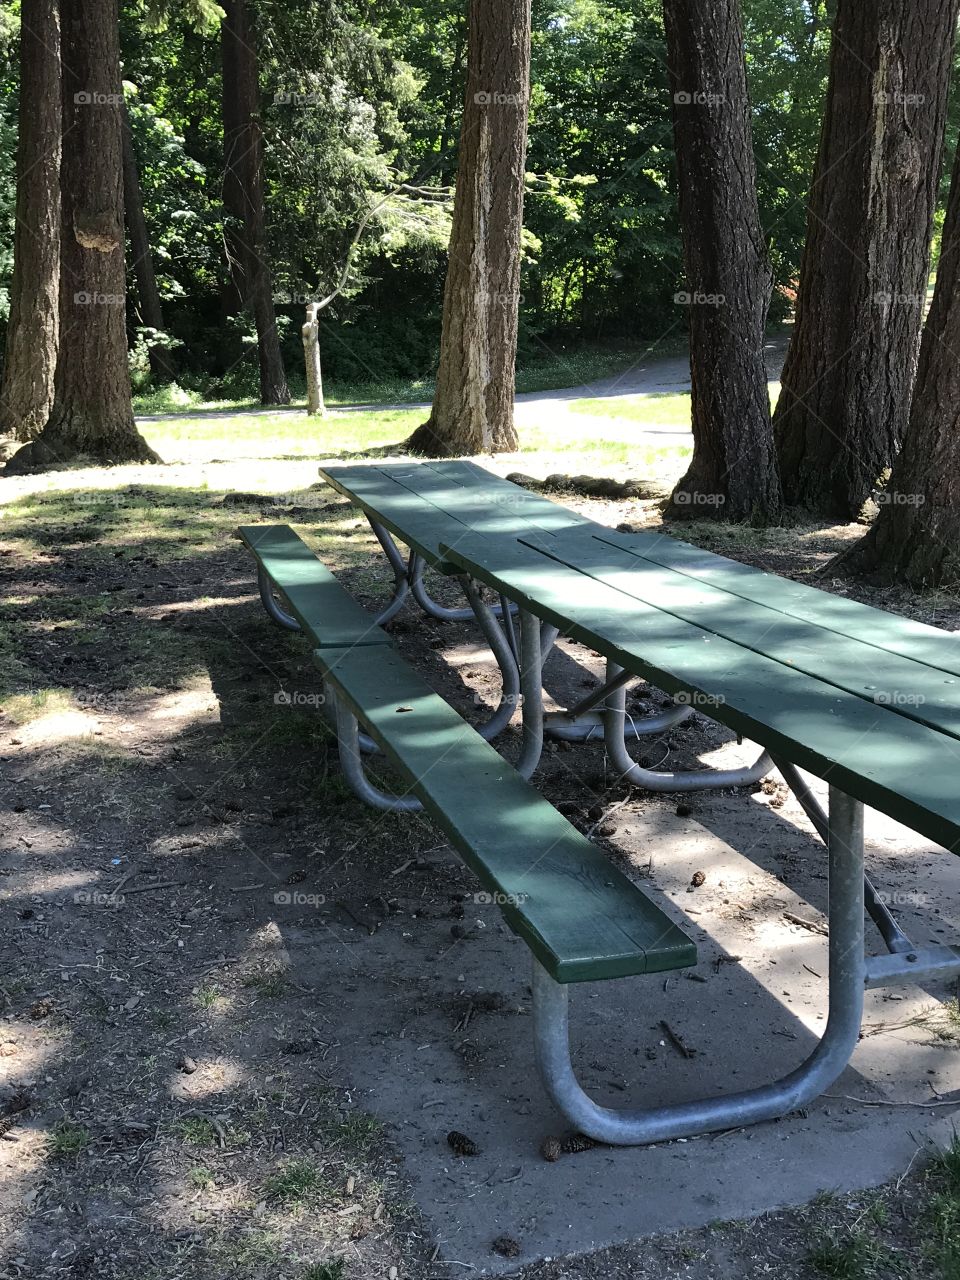 Park picnic tables